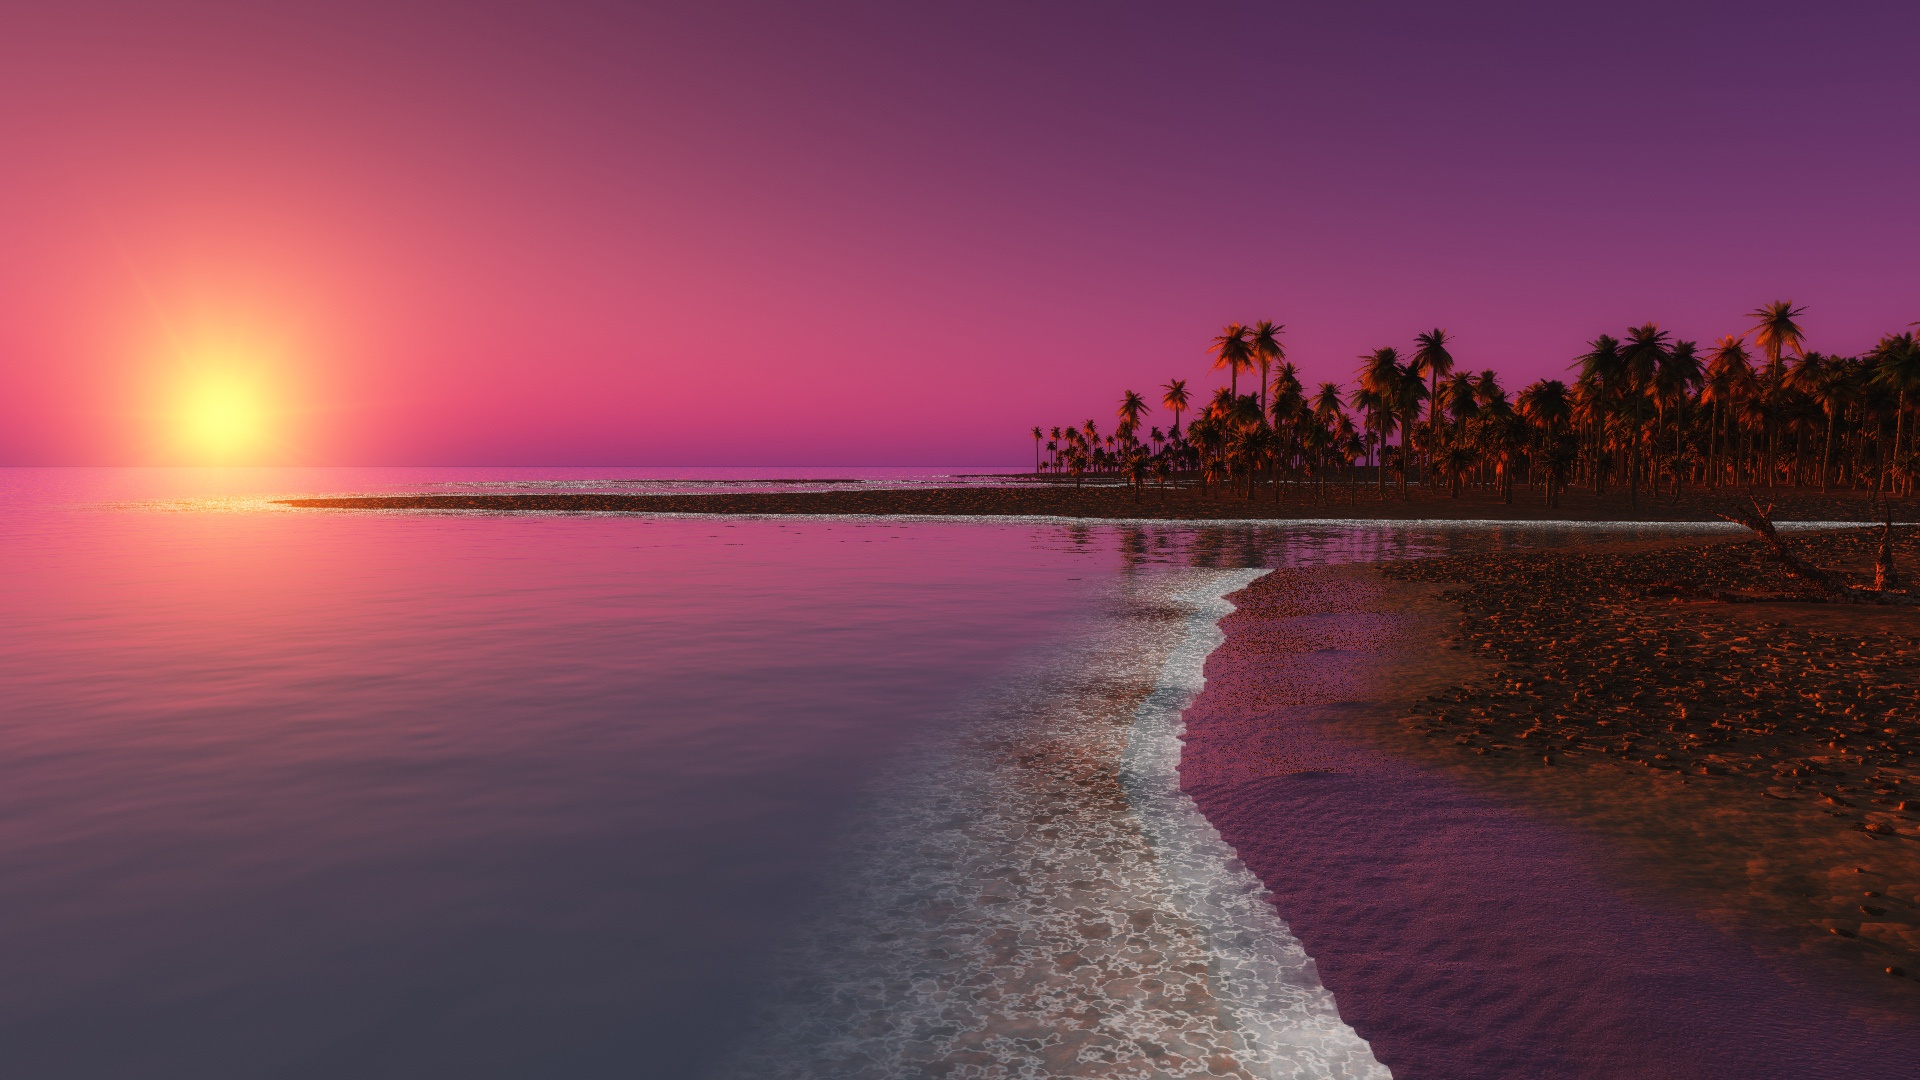 Twilight Sunset Image HD Desktop Background For